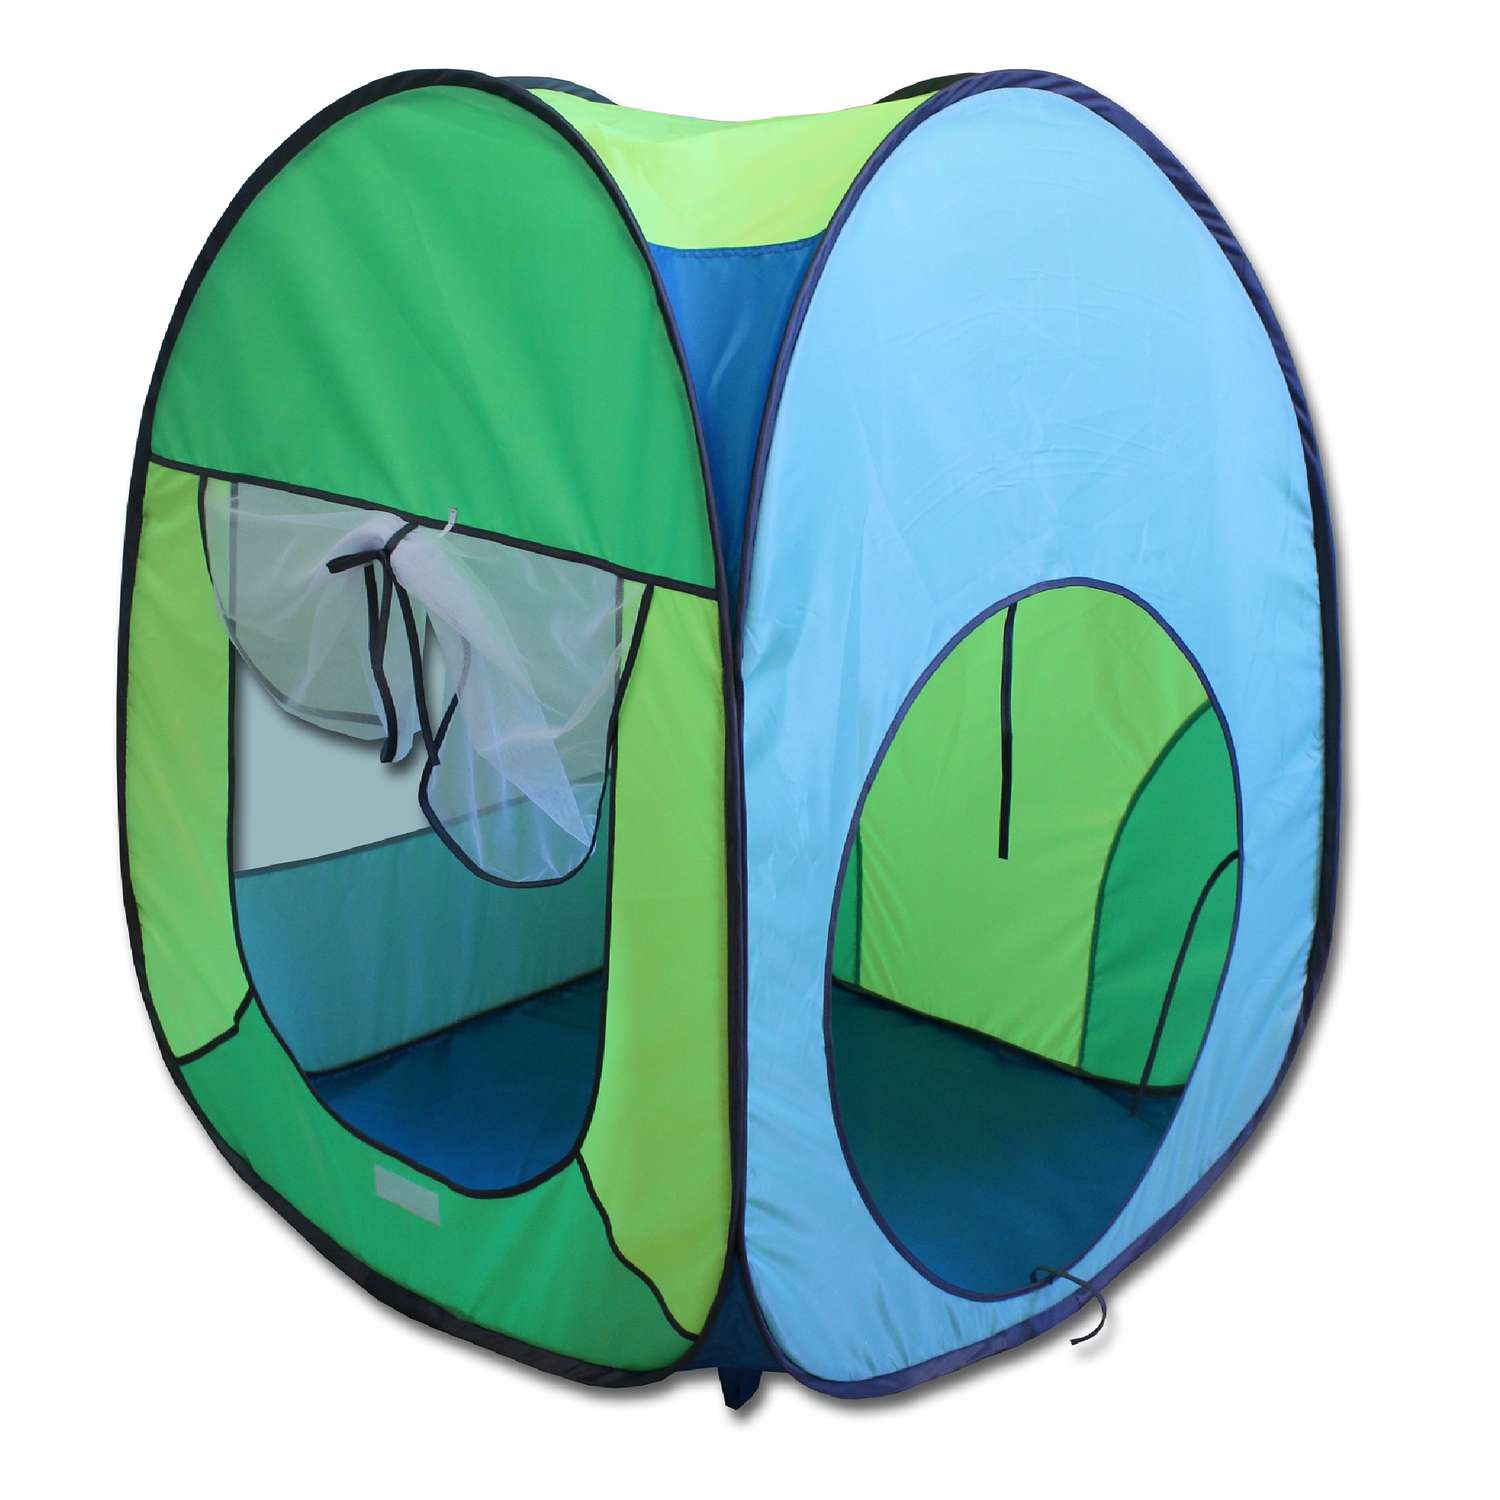 Палатка игровая Belon familia Волшебный домик цвет яркий голубой/салатовый/лимон/бирюза Размеры 75х75х90 см - фото 1